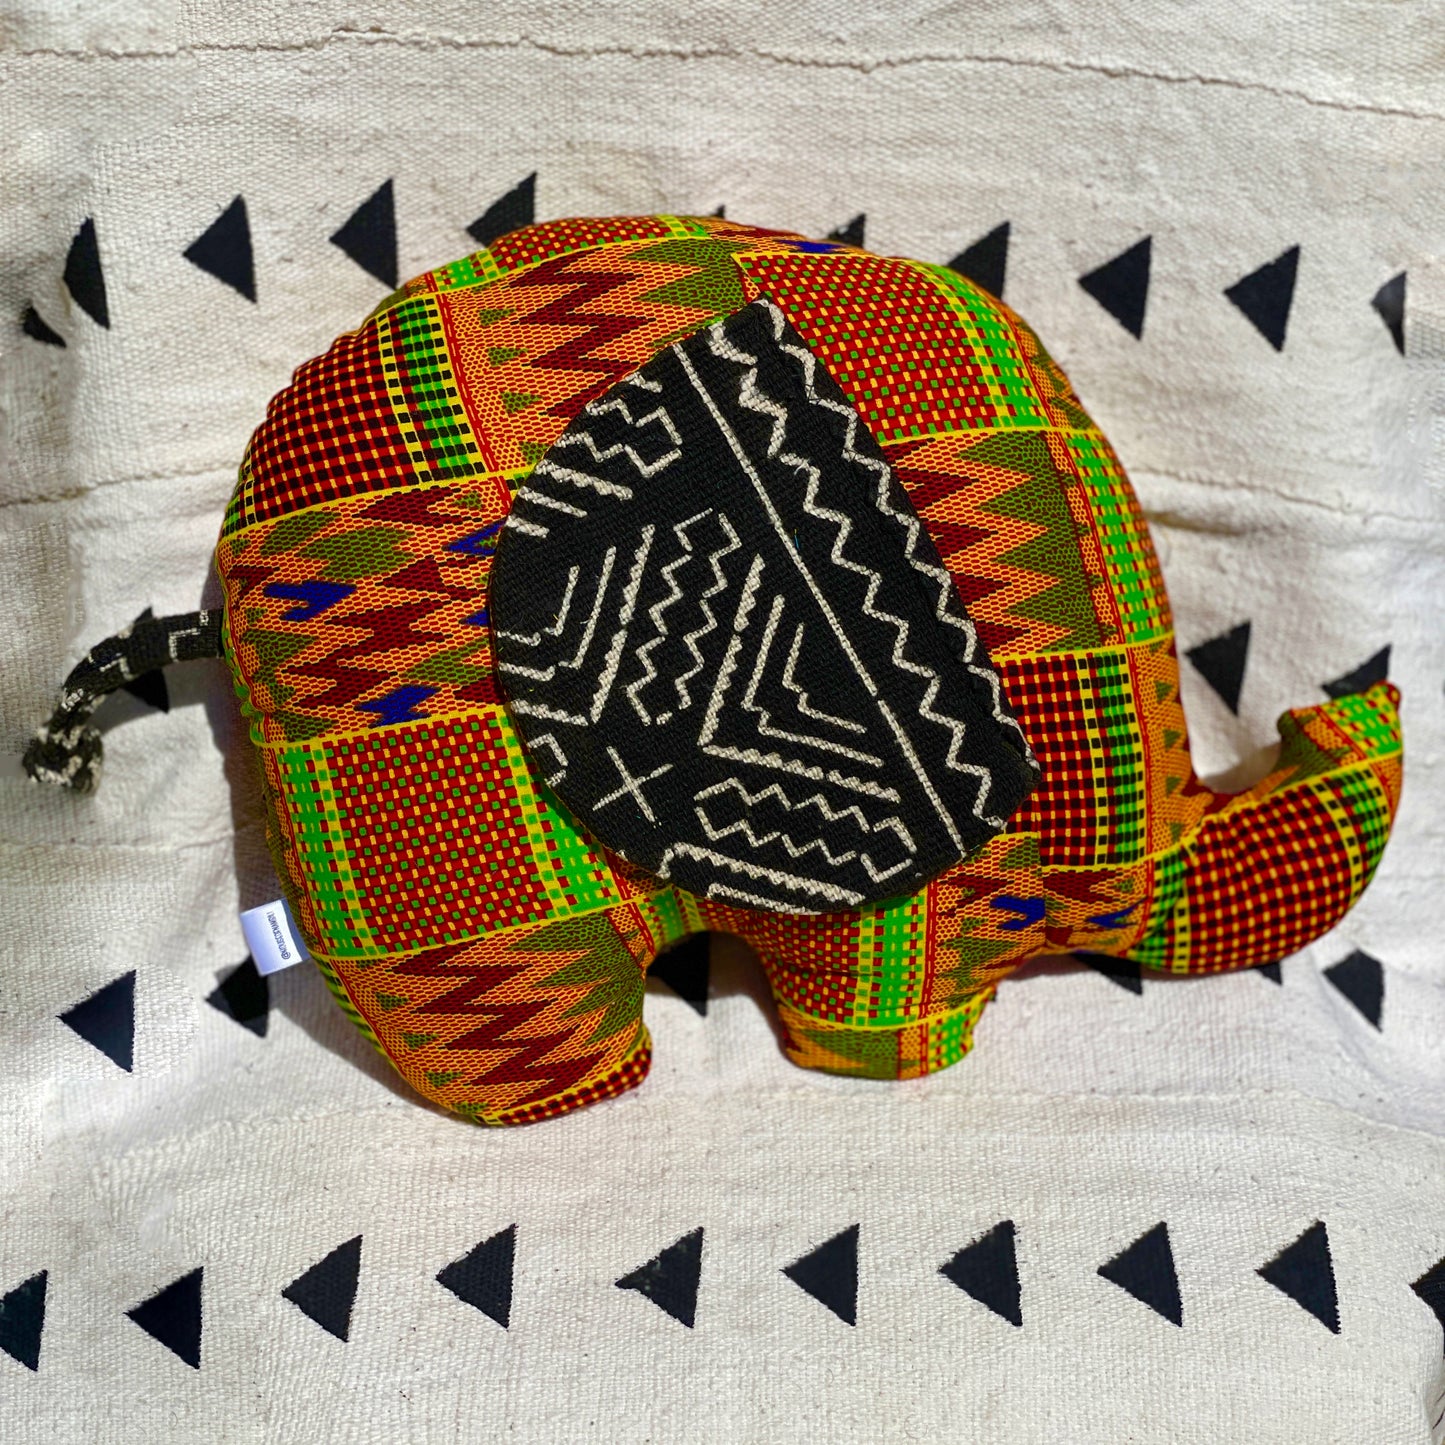 Ngozi Elephant Pillow - Blue/Red/Black/Yellow/White - House Of Nambili